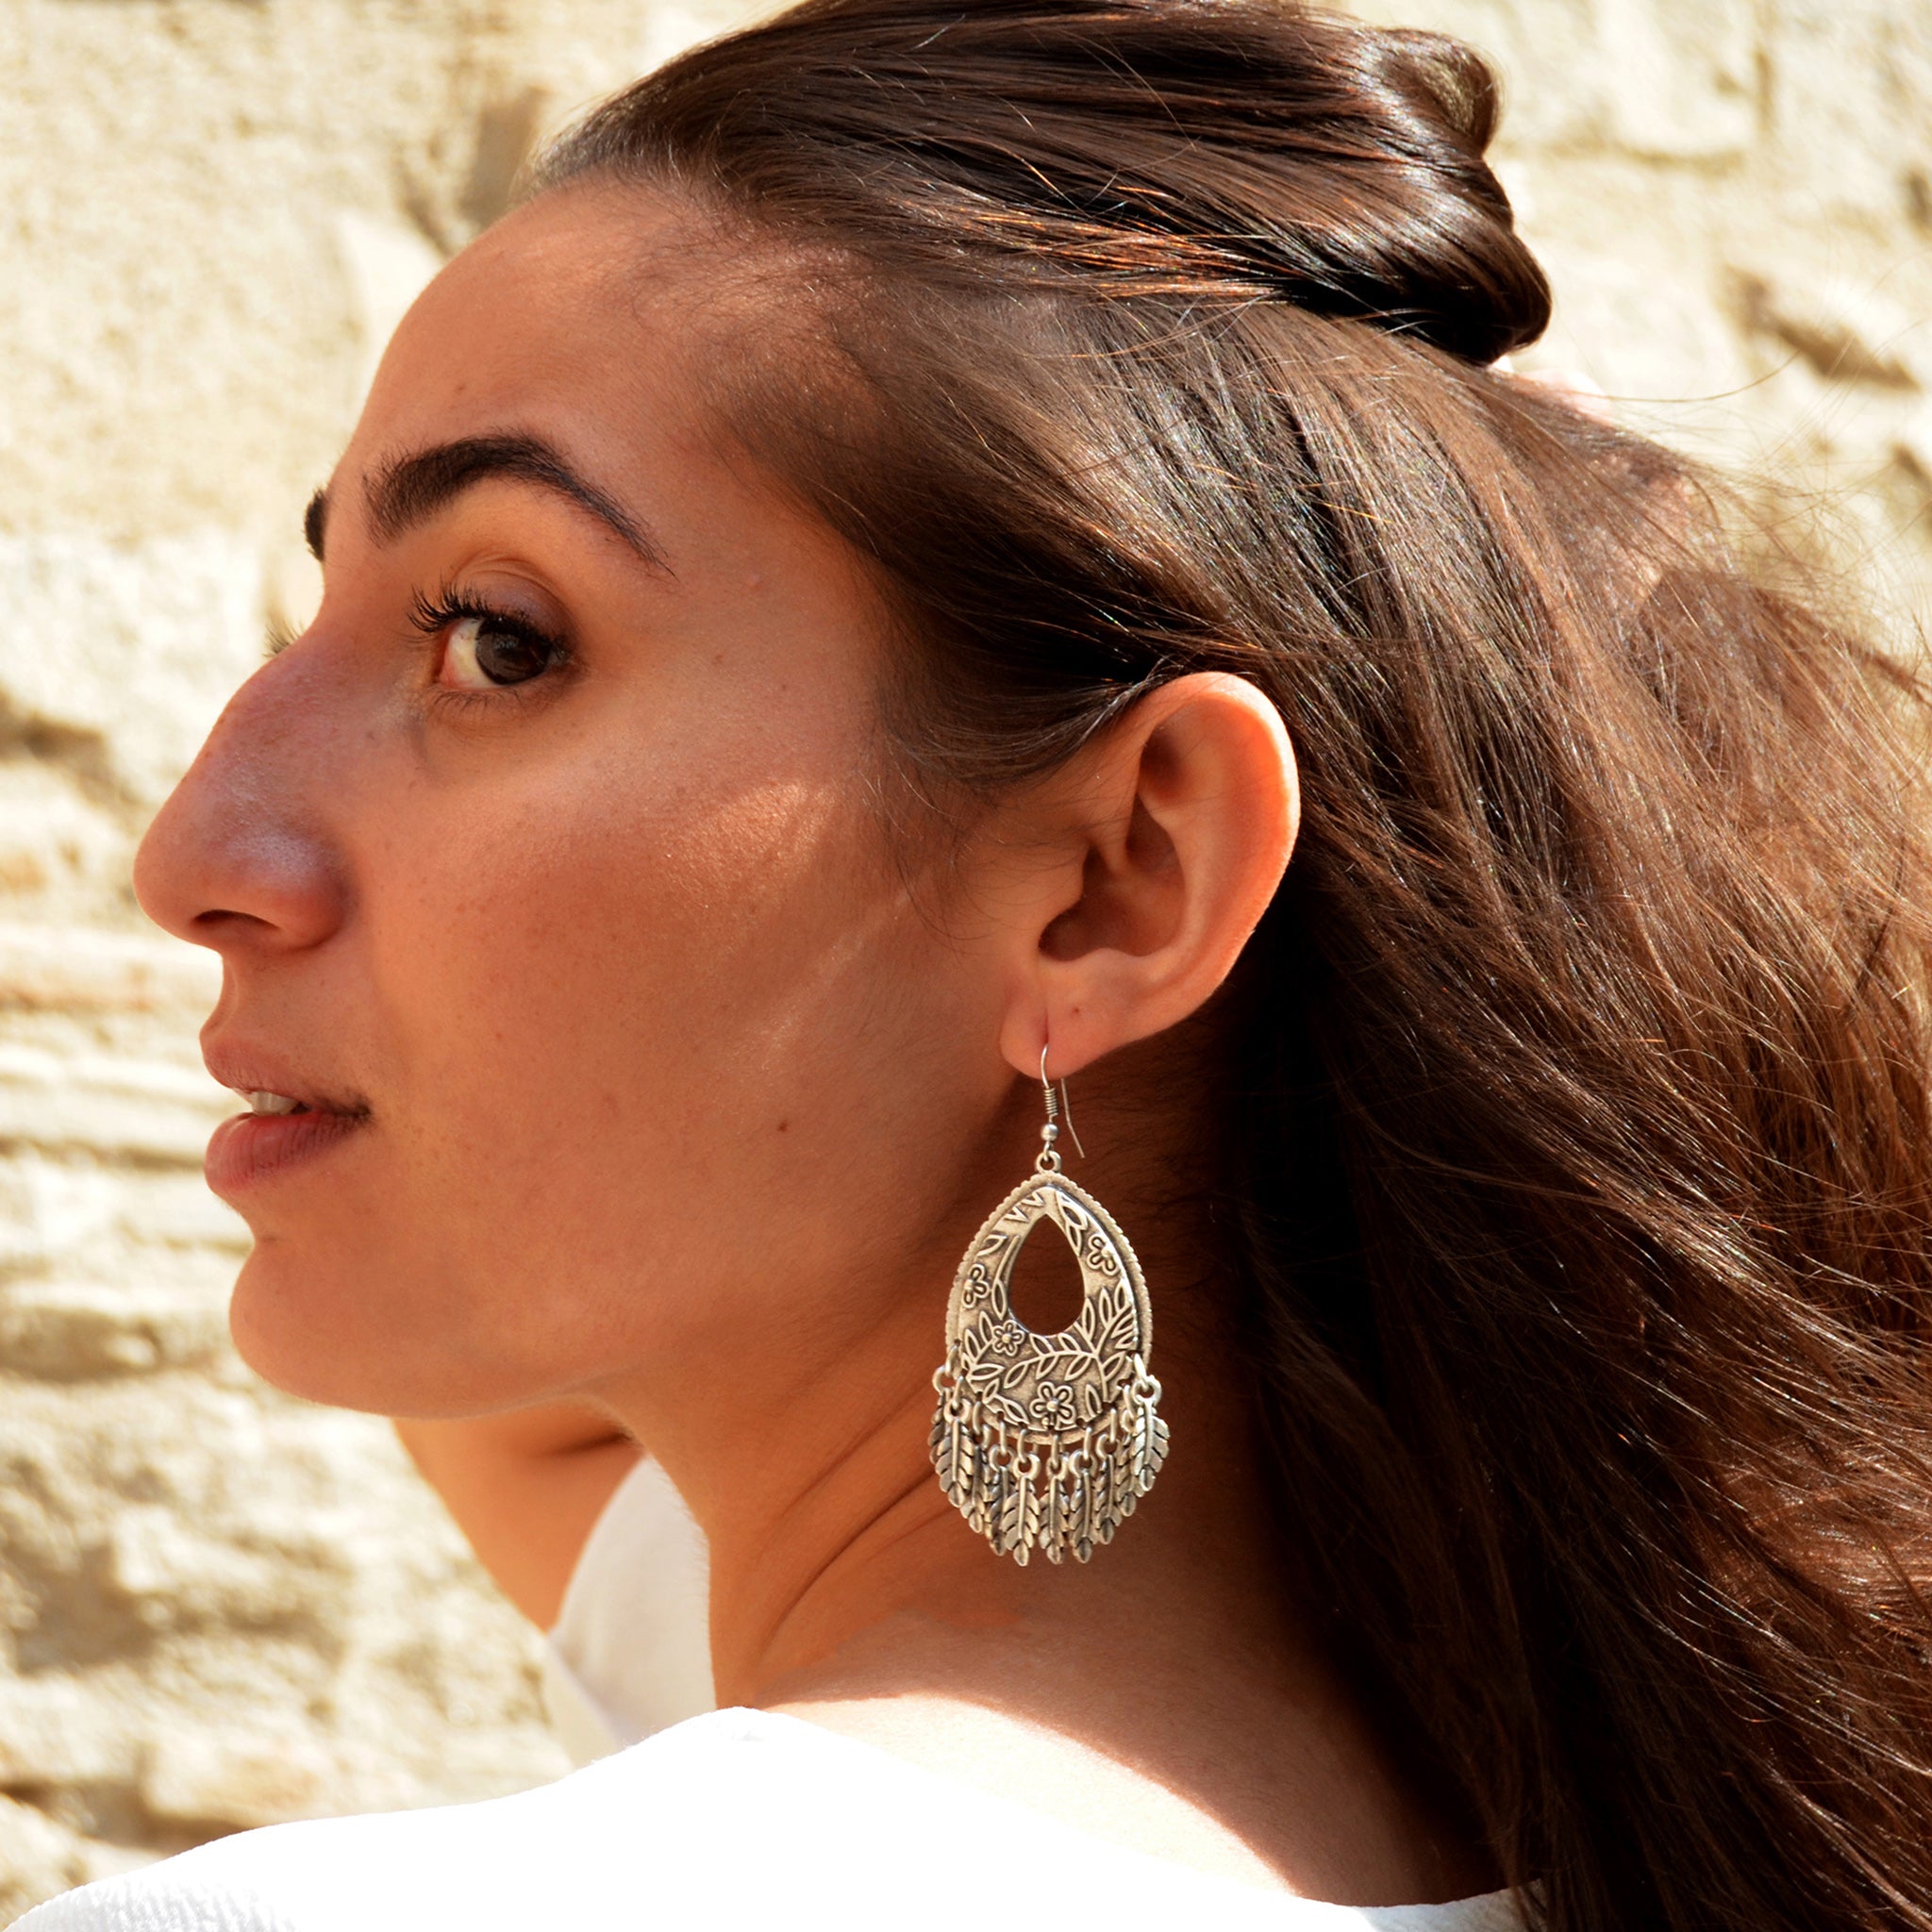 Gypsy oval earrings